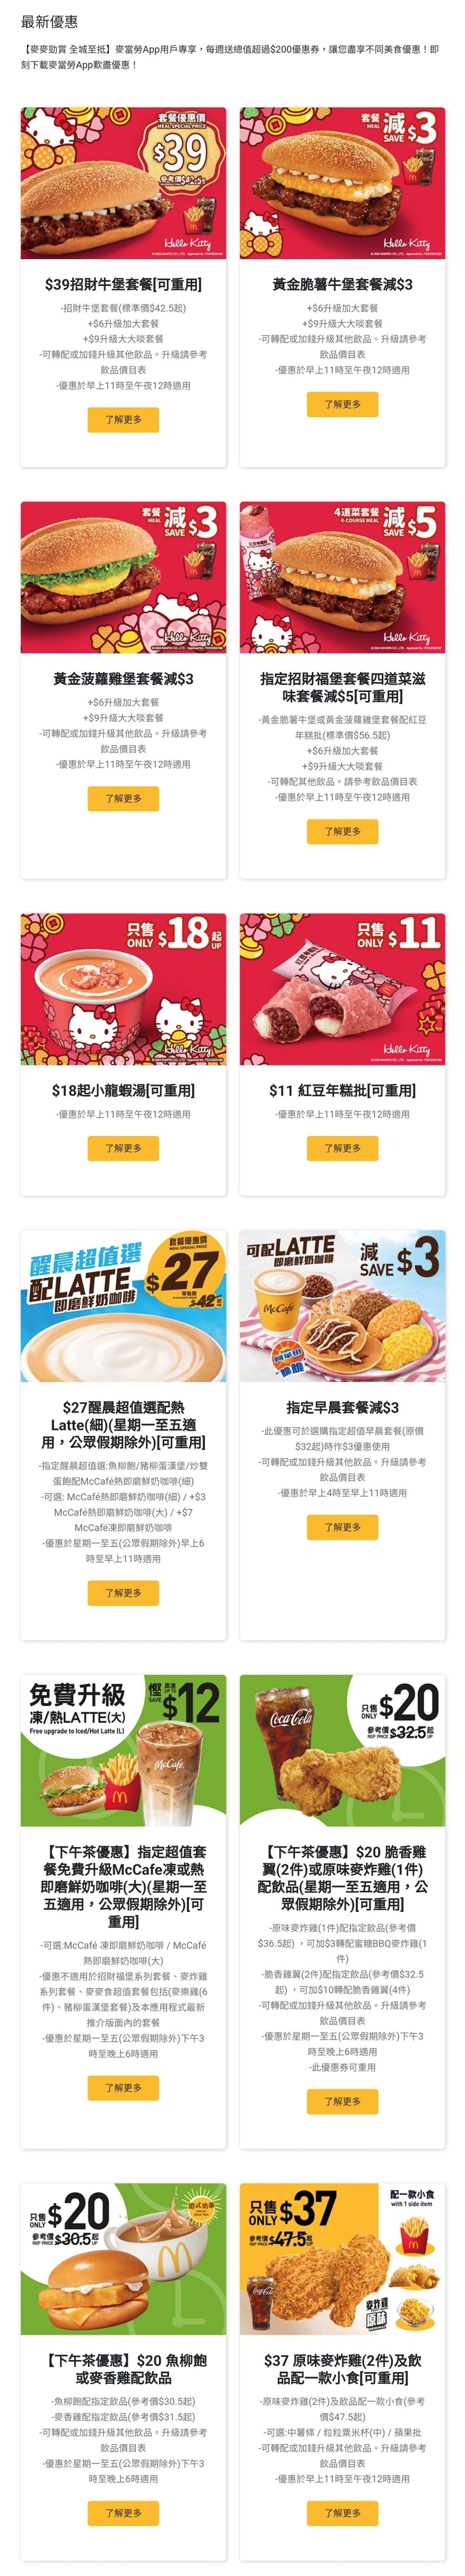 麥當勞24小時麥麥送餐單外賣速遞優惠服務最低消費要幾錢去邊度平哪邊間好介紹 mcdonald's restaurants hong kong ltd mcdelivery service breakfast time menu mcdonald's delivery price